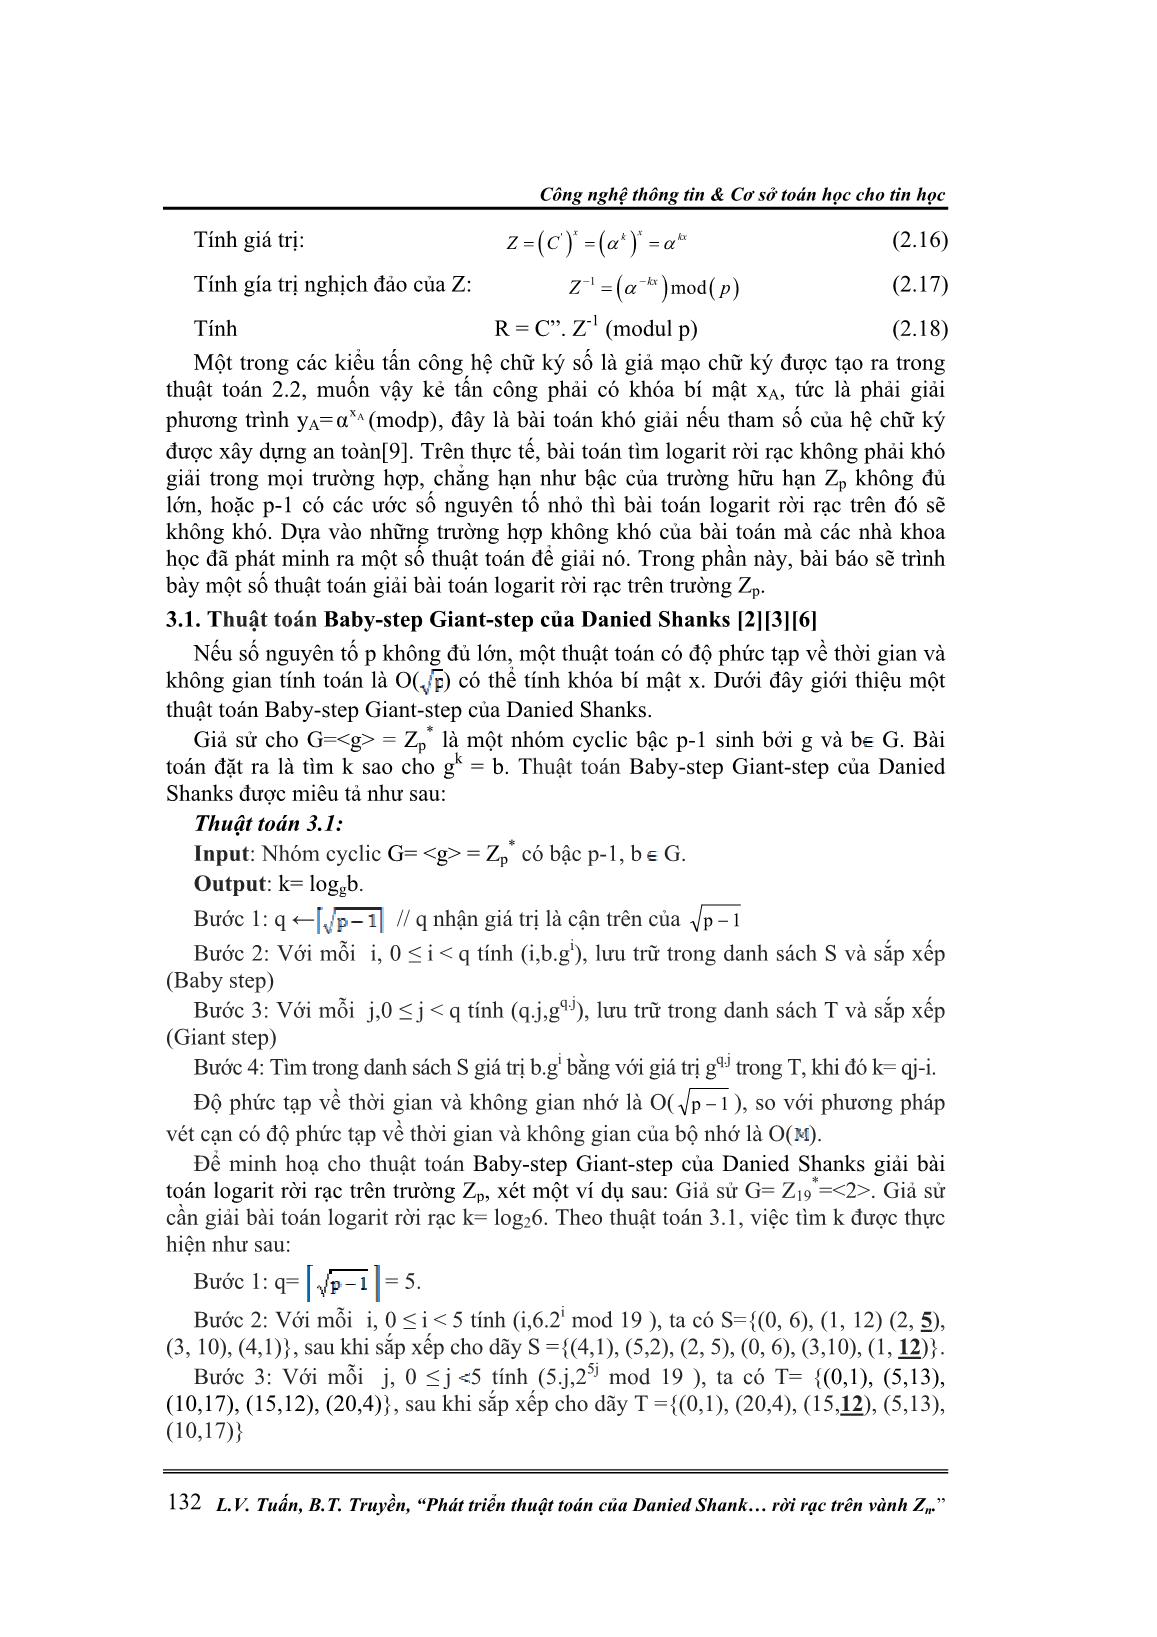 Phát triển thuật toán của Danied Shank để giải bài toán Logarit rời rạc trên vành Zn trang 4